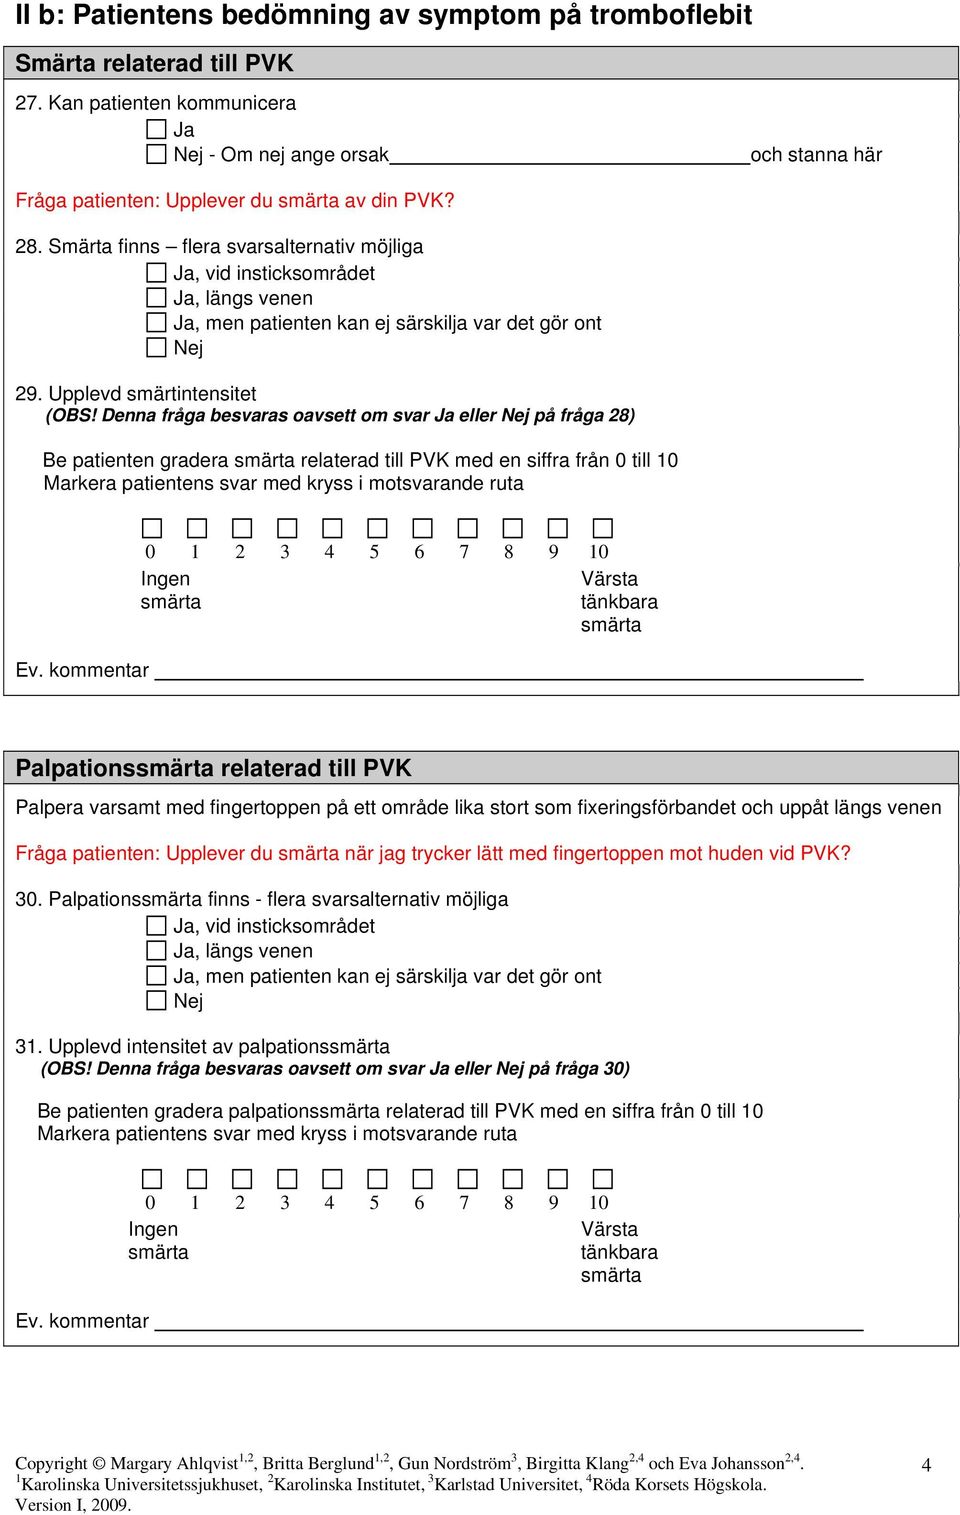 Denna fråga besvaras oavsett om svar eller på fråga 28) Be patienten gradera relaterad till PVK med en siffra från 0 till 10 Markera patientens svar med kryss i motsvarande ruta 0 1 2 3 4 5 6 7 8 9